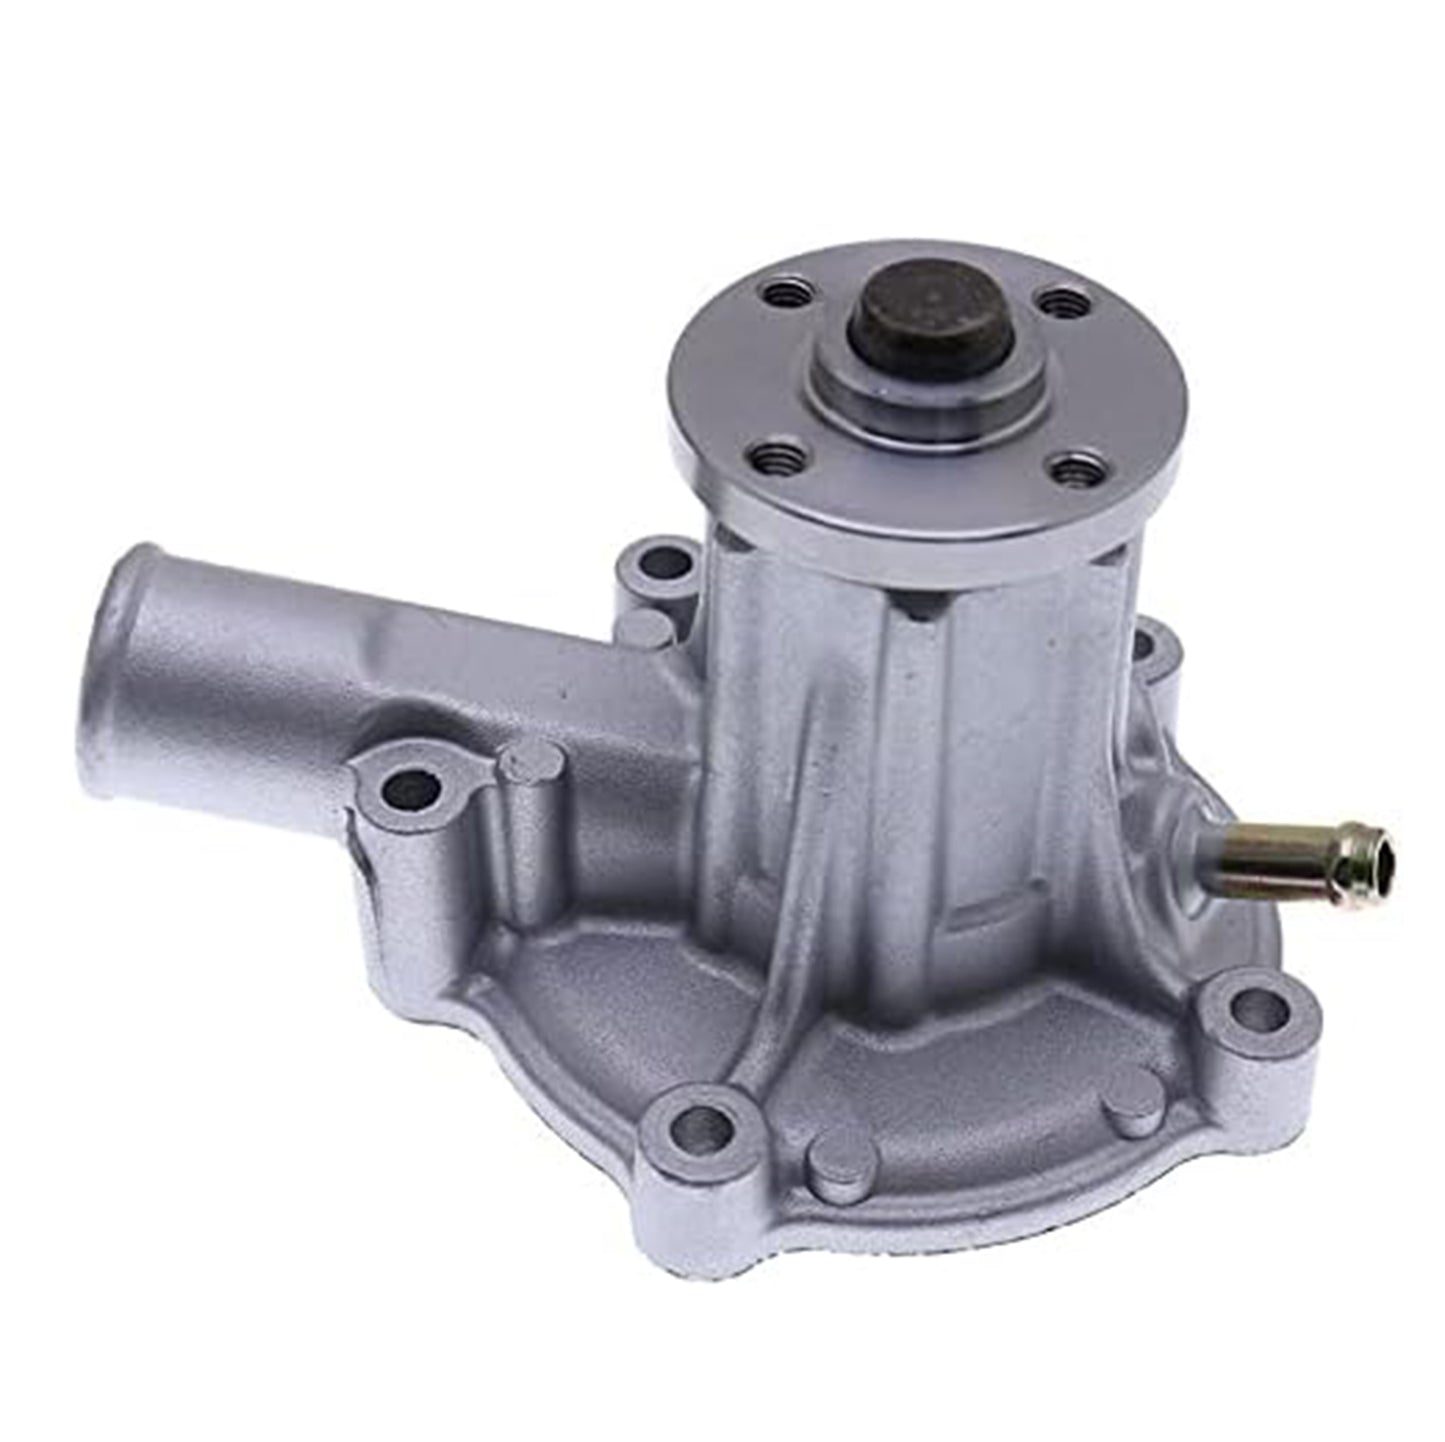 1K576-73032 1K576-73030 Water Pump Compatible with Kubota D1005 D1105 V1505 Engine KX71-3